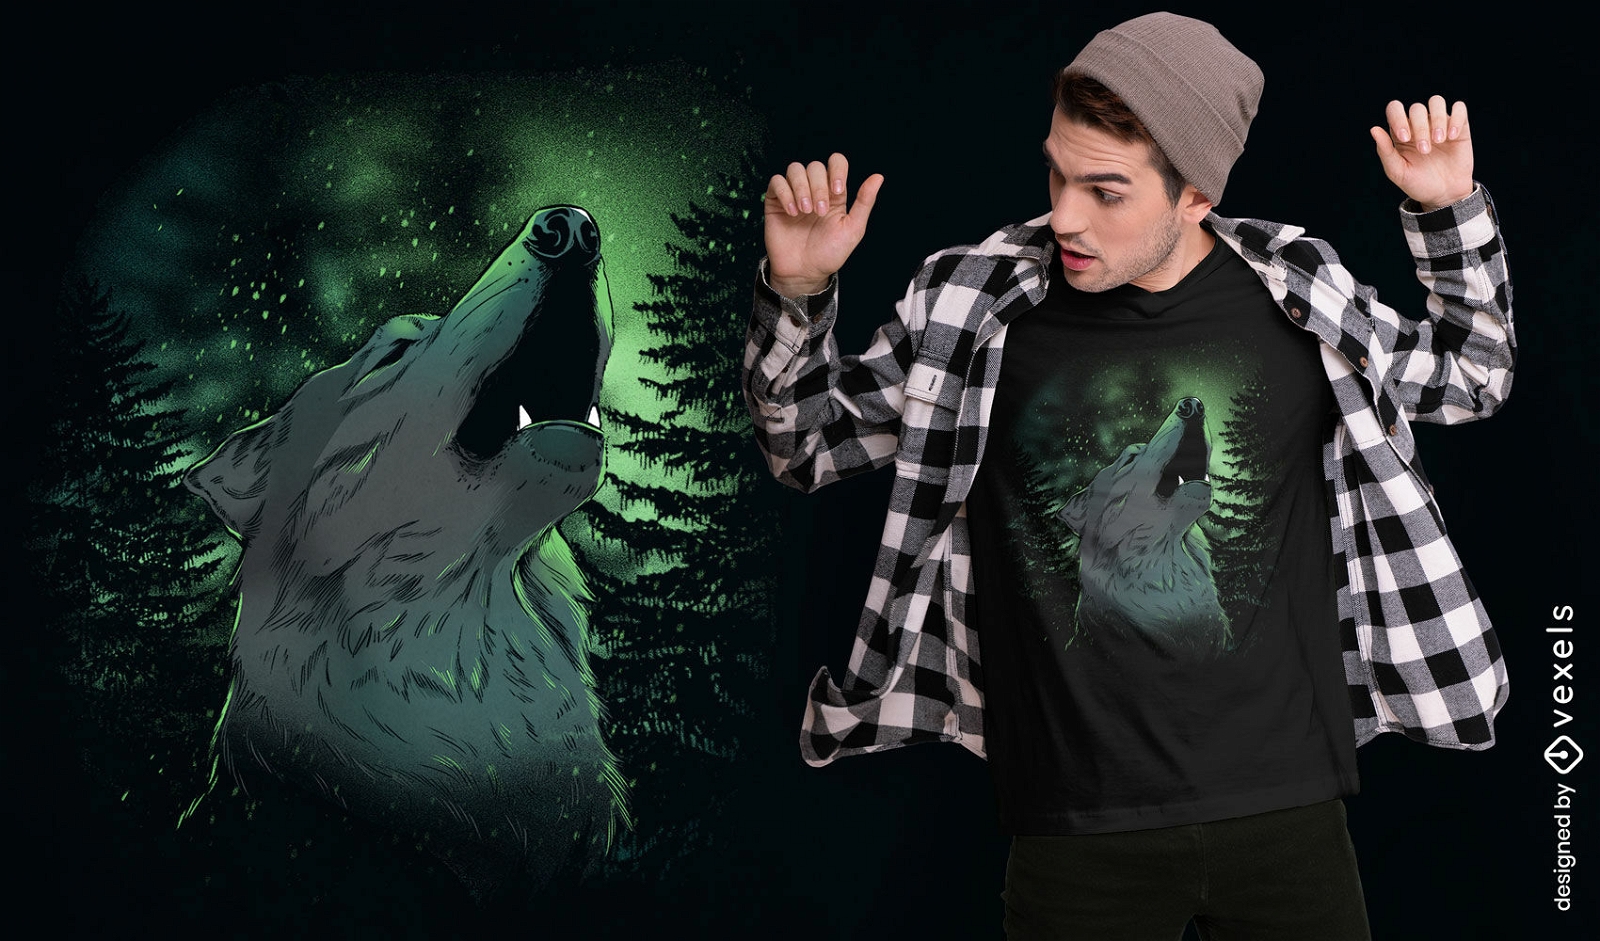 Howling wolf t-shirt deisgn